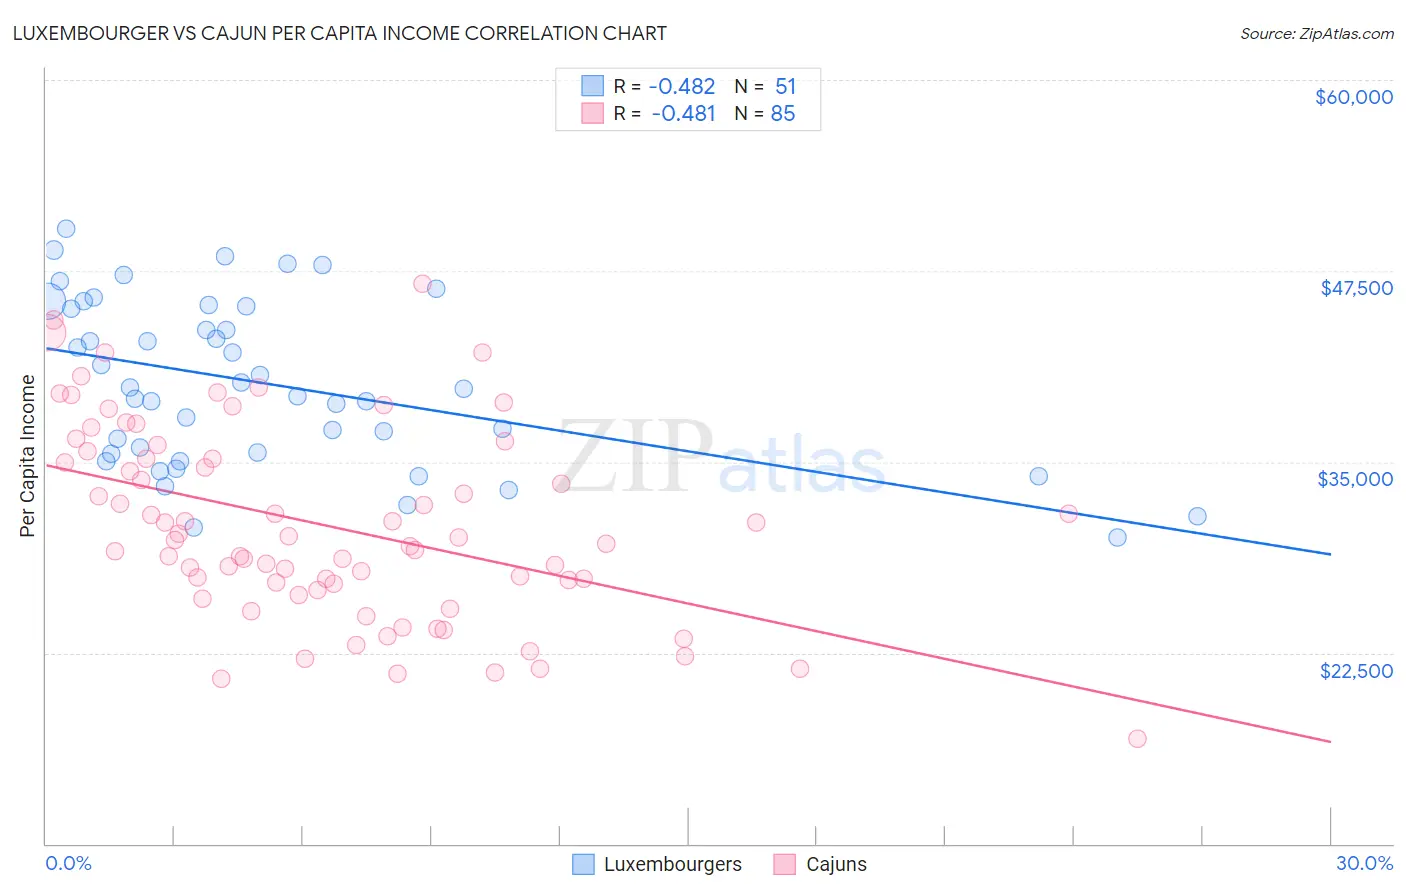 Luxembourger vs Cajun Per Capita Income